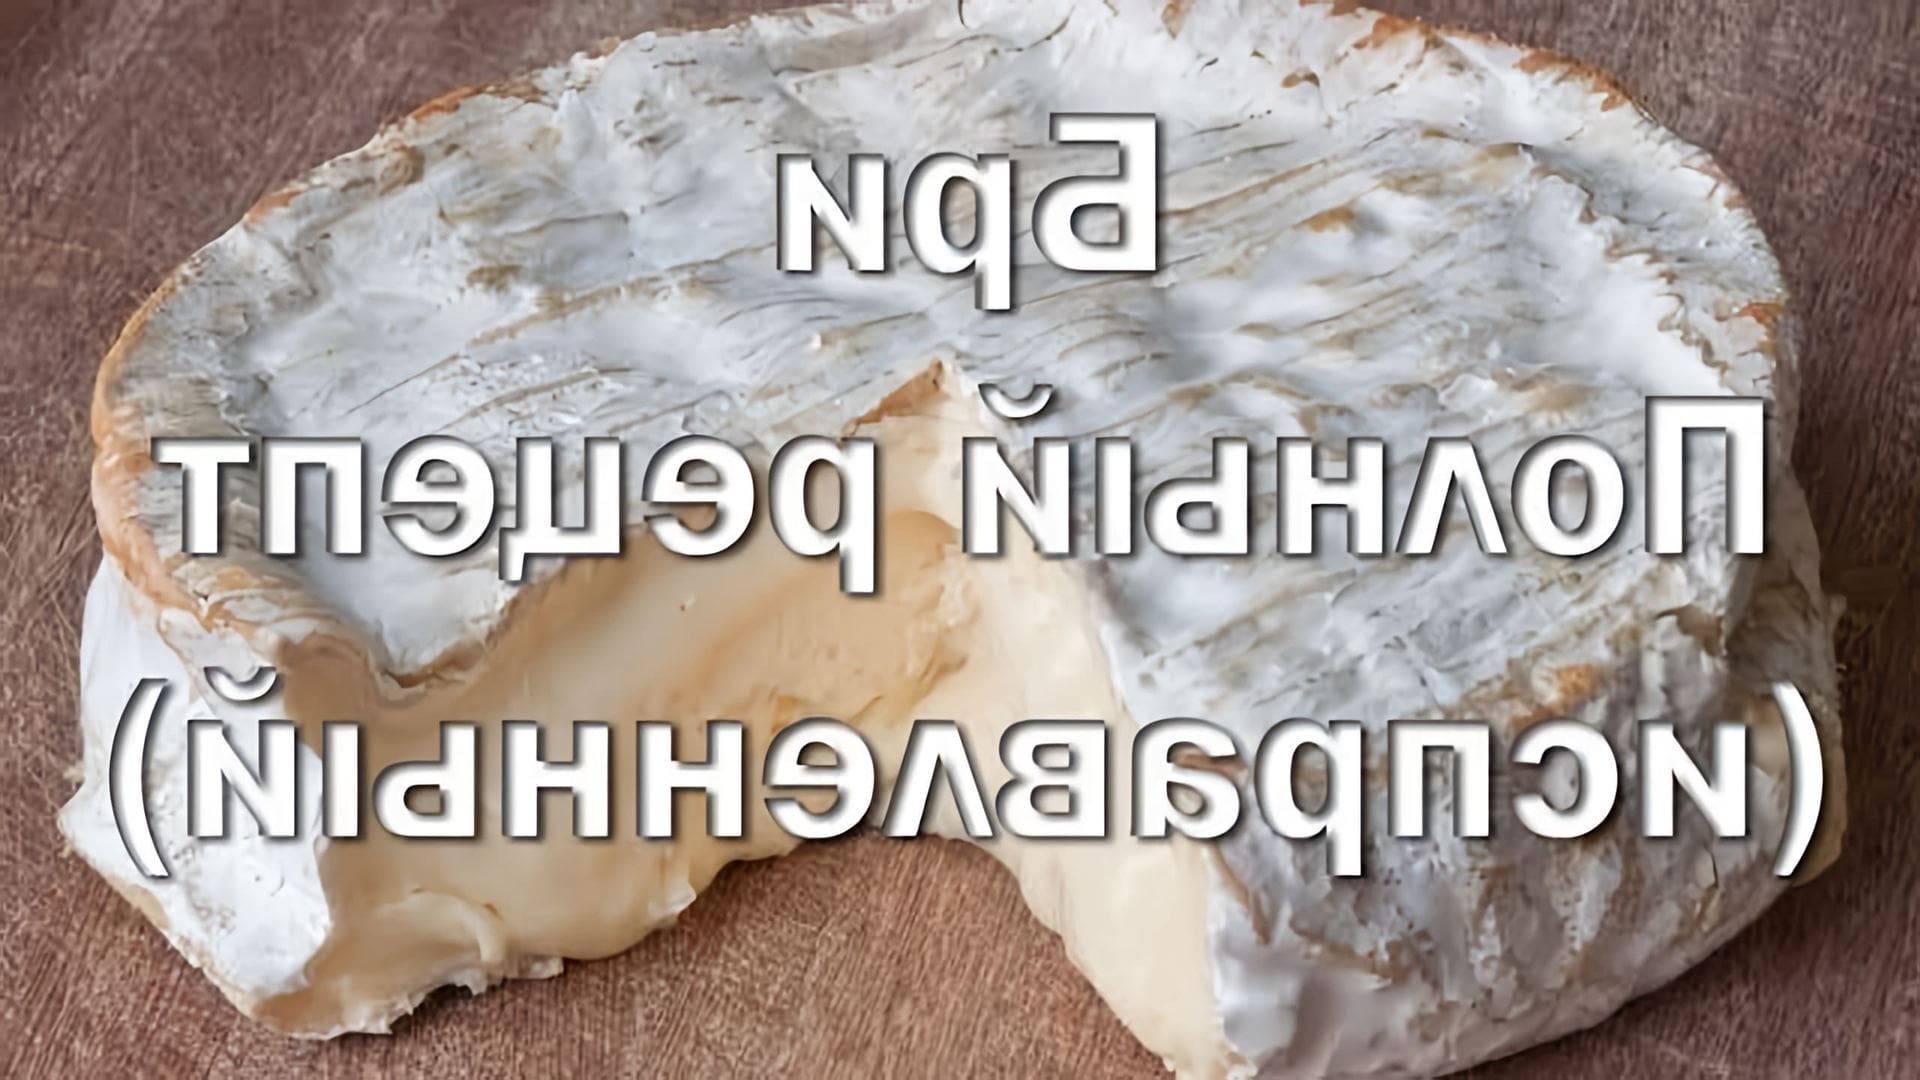 В этом видео демонстрируется процесс приготовления сыра бри в домашних условиях